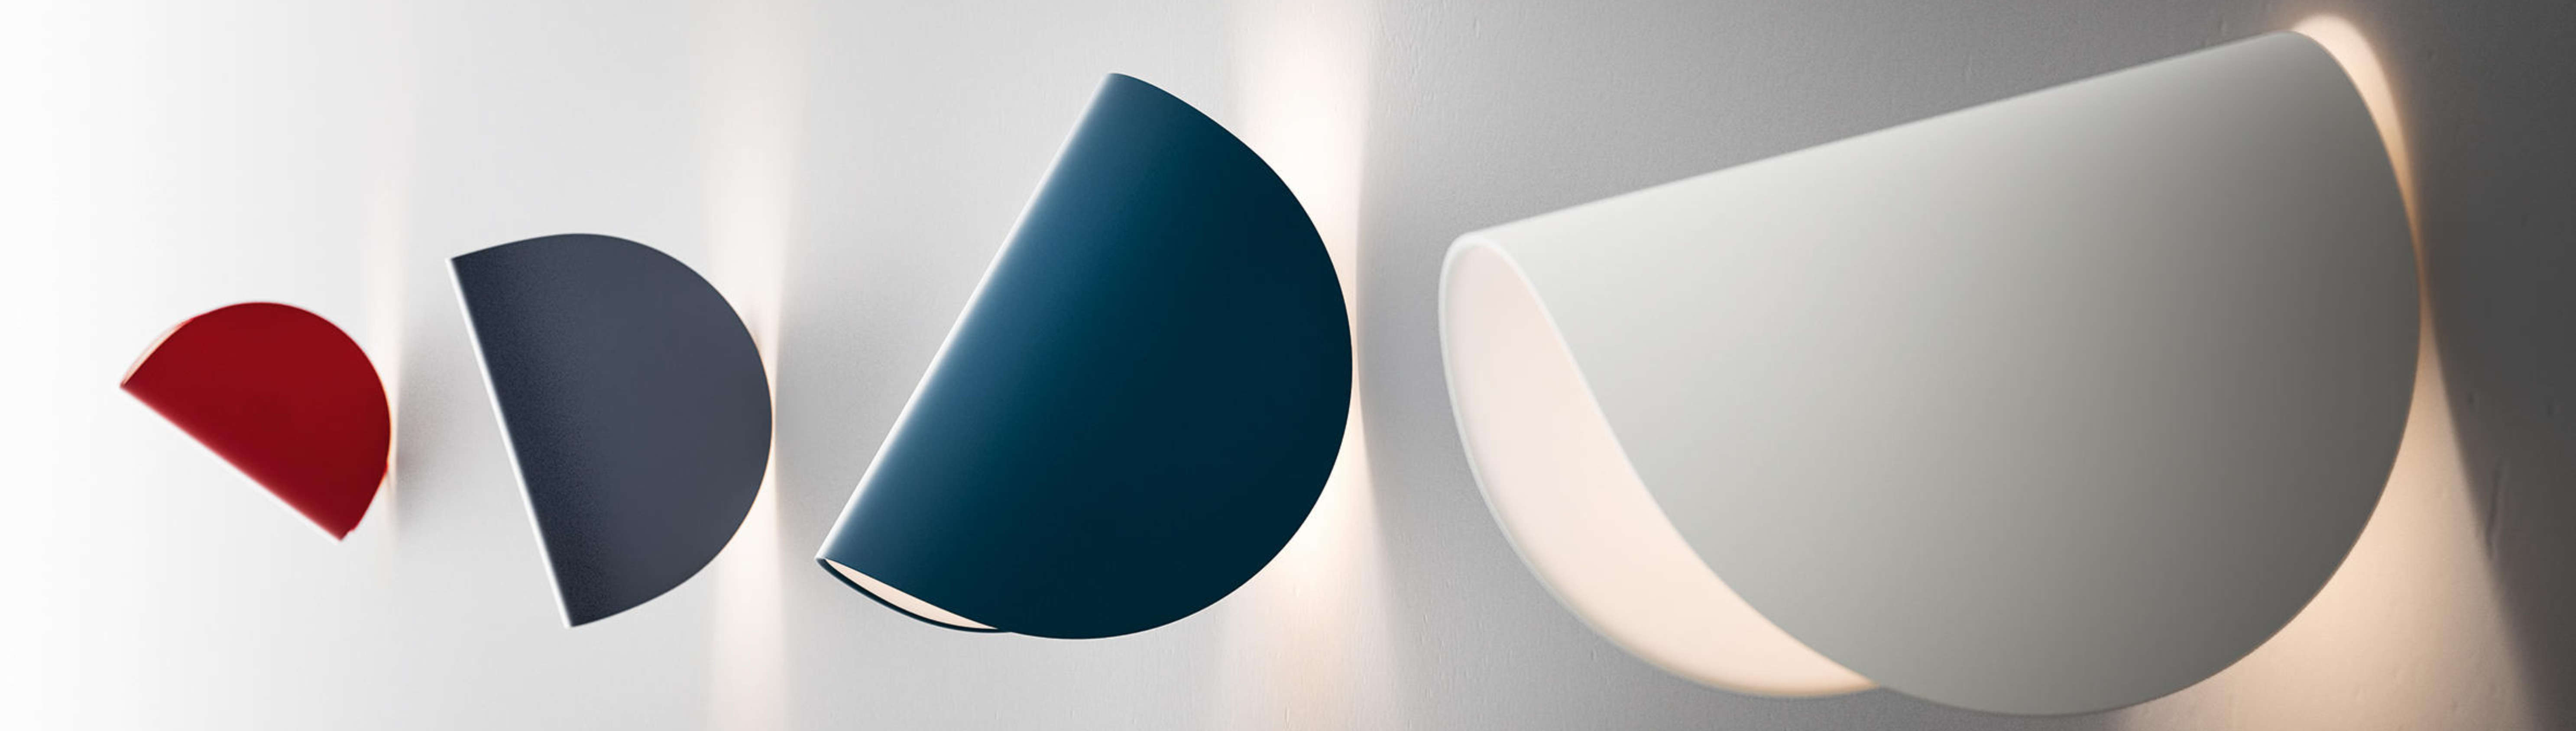 FontanaArte elegante designerlamper til fantastiske priser hos AndLight!